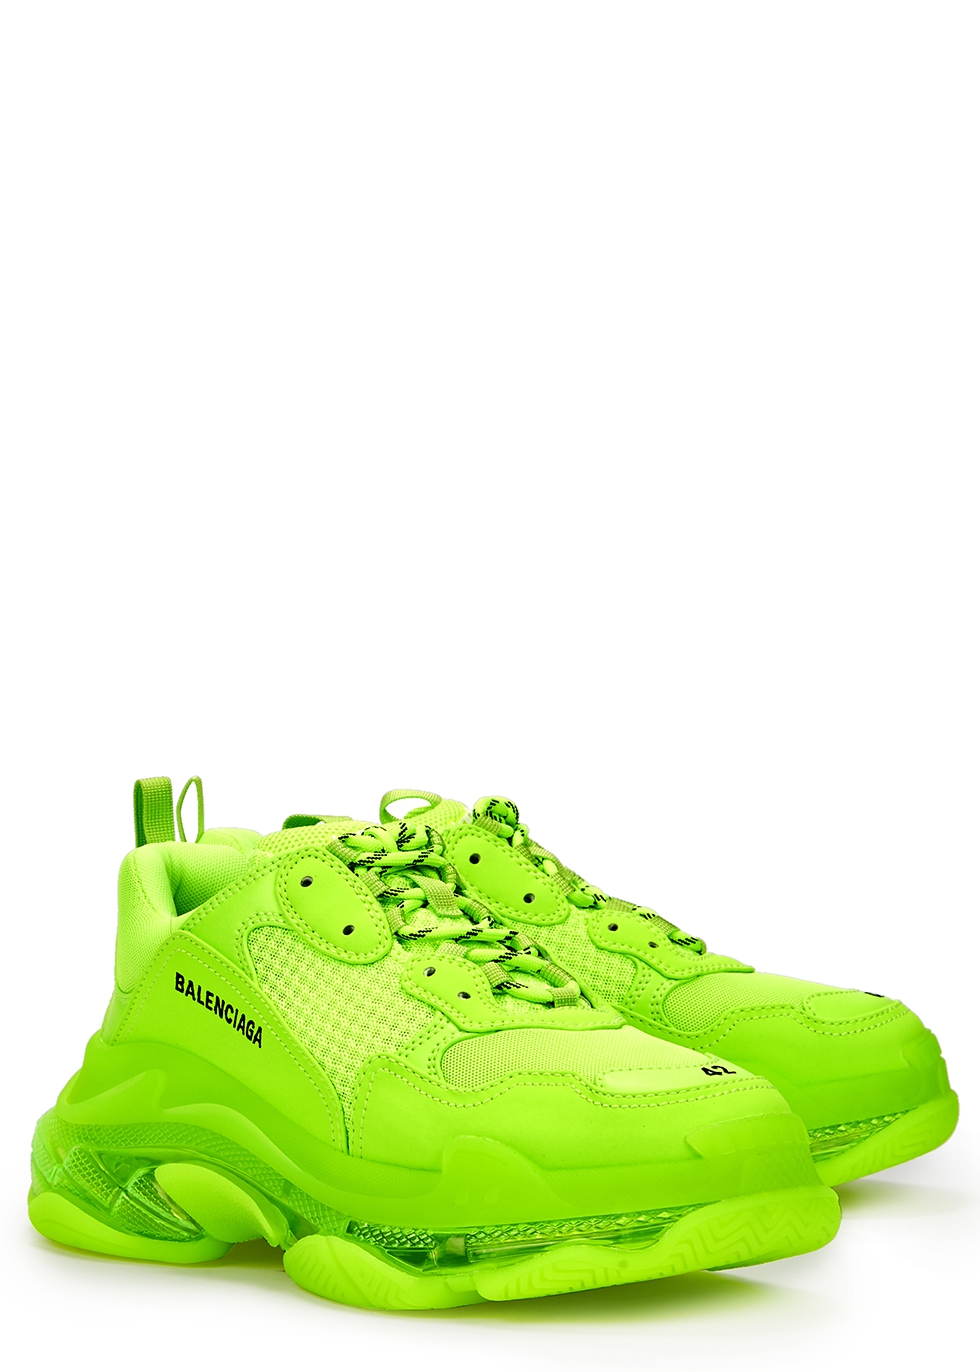 balenciaga lime green shoes